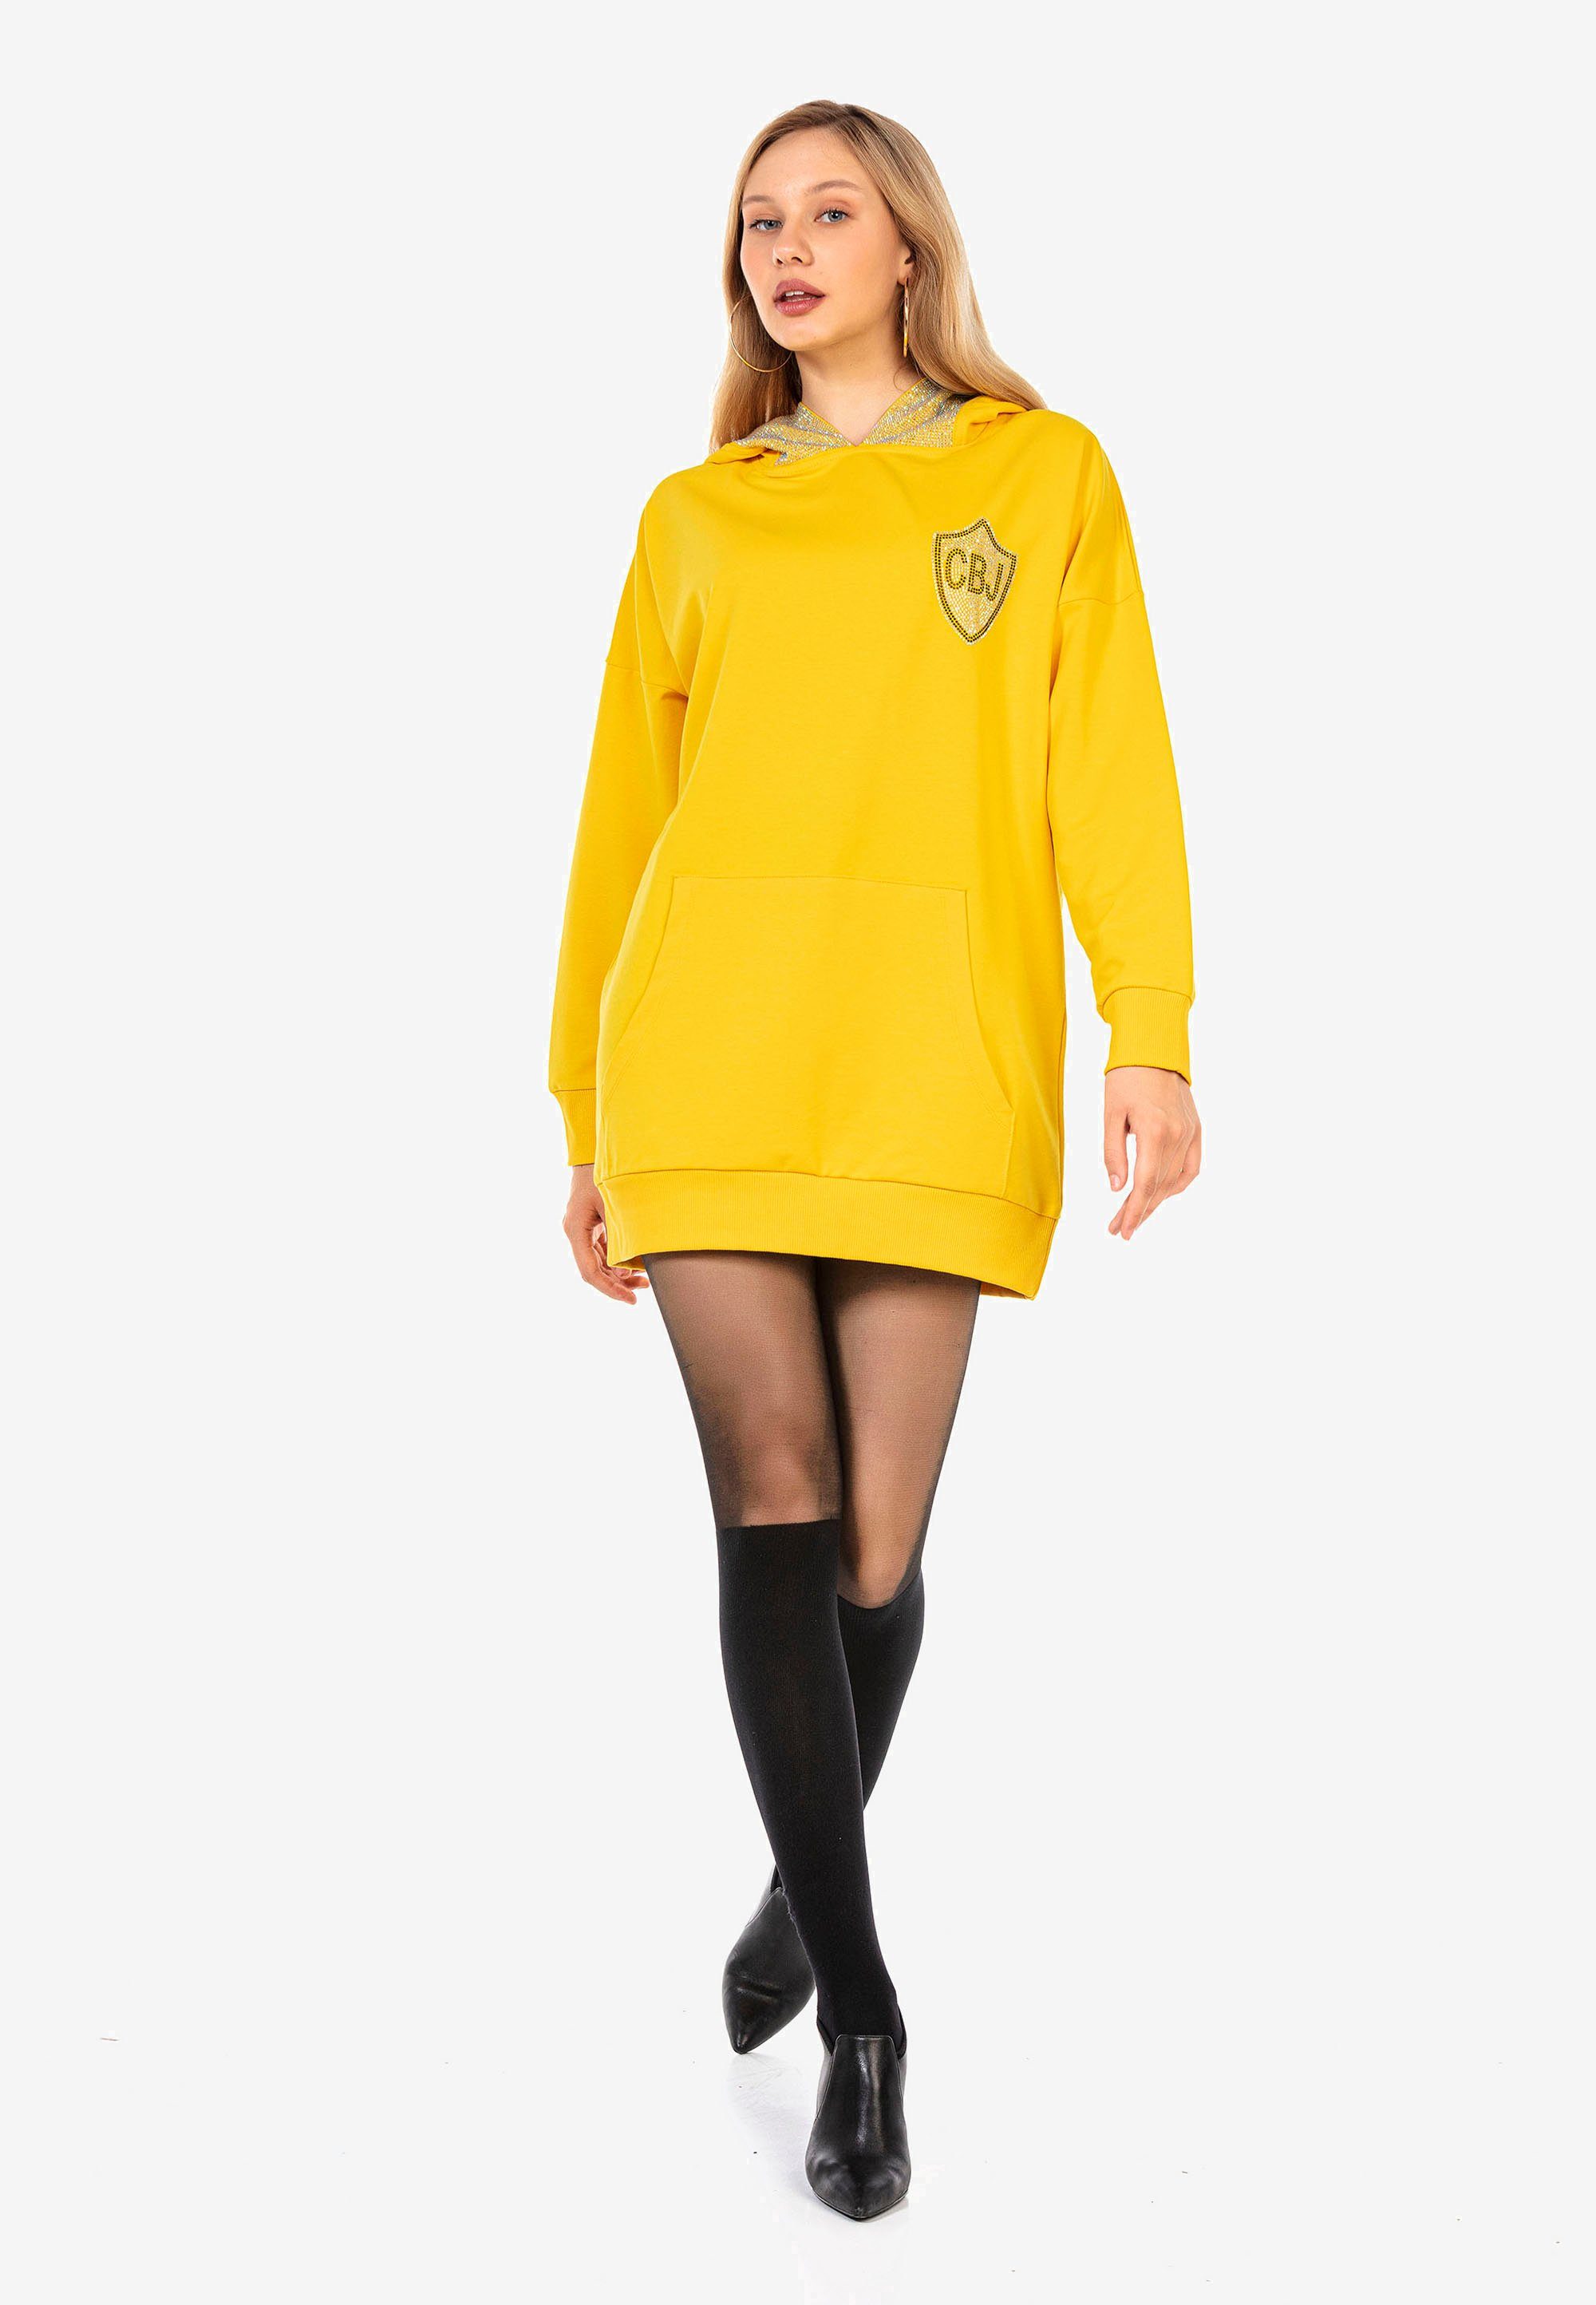 Baxx Strass-Design Jerseykleid gelb mit Cipo aufwendigem &